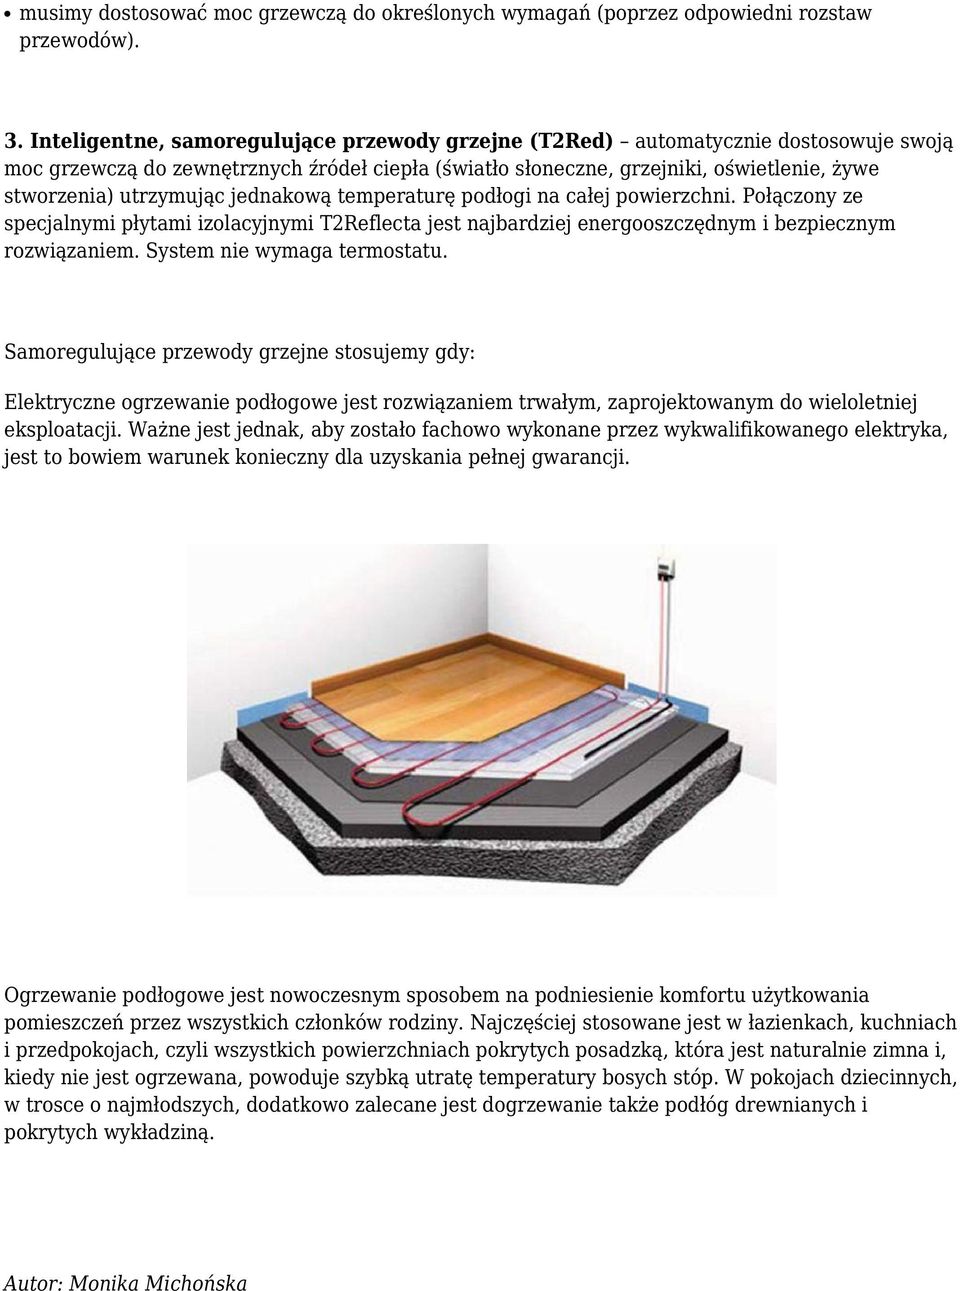 utrzymując jednakową temperaturę podłogi na całej powierzchni. Połączony ze specjalnymi płytami izolacyjnymi T2Reflecta jest najbardziej energooszczędnym i bezpiecznym rozwiązaniem.